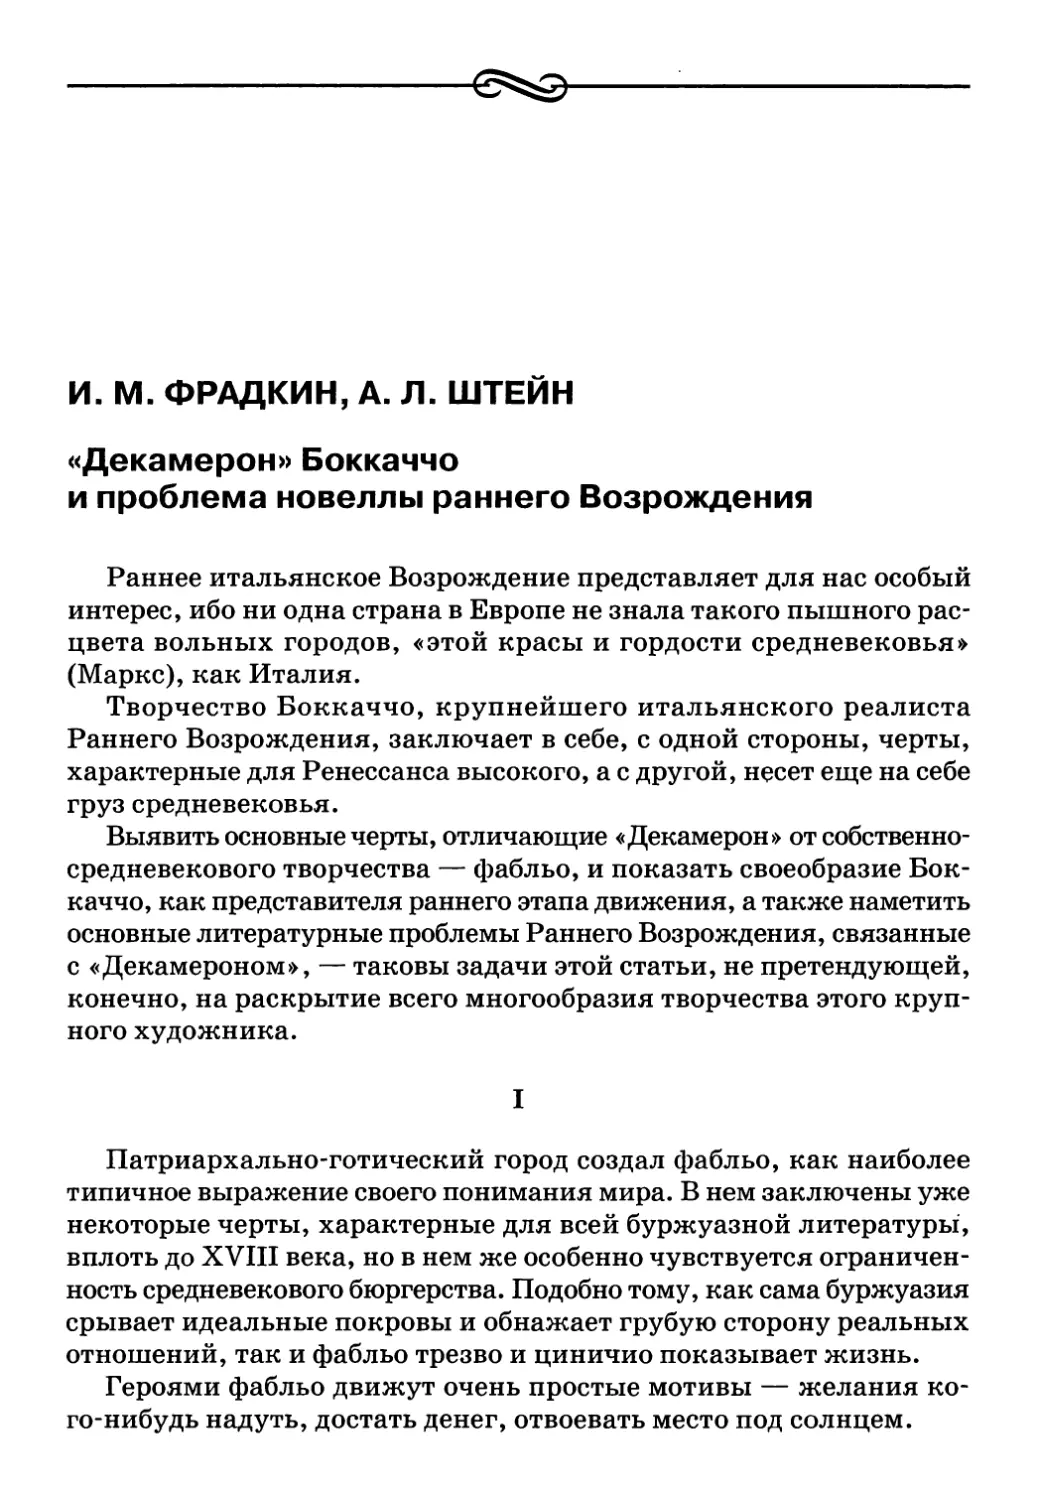 И. М. Фрадкин, А. Л. Штейн. «Декамерон» Боккаччо и проблема новеллы раннего Возрождения